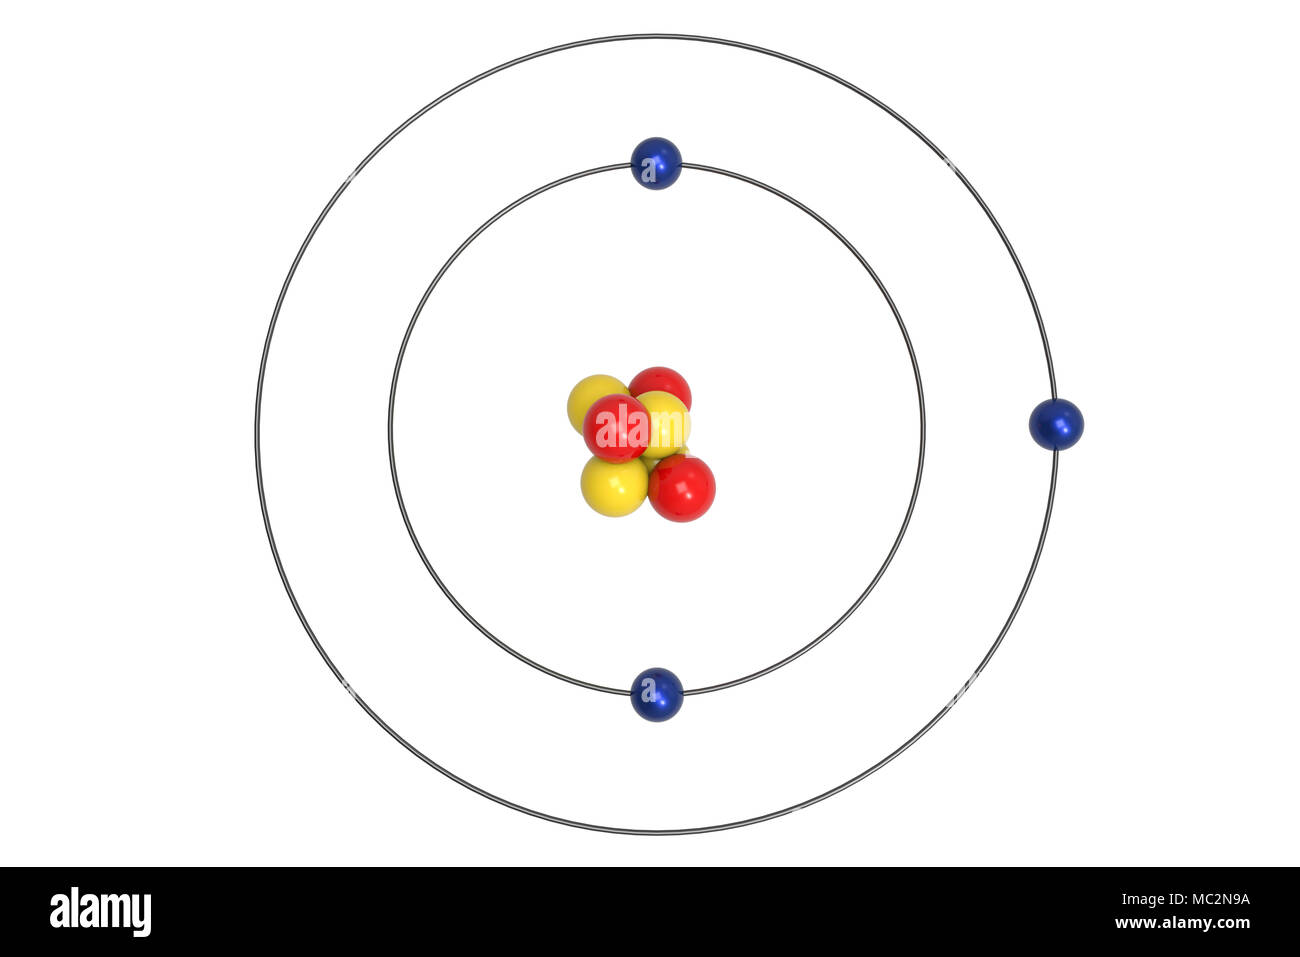 Descubrir 76+ imagen maqueta de un modelo atomico en 3d - Abzlocal.mx